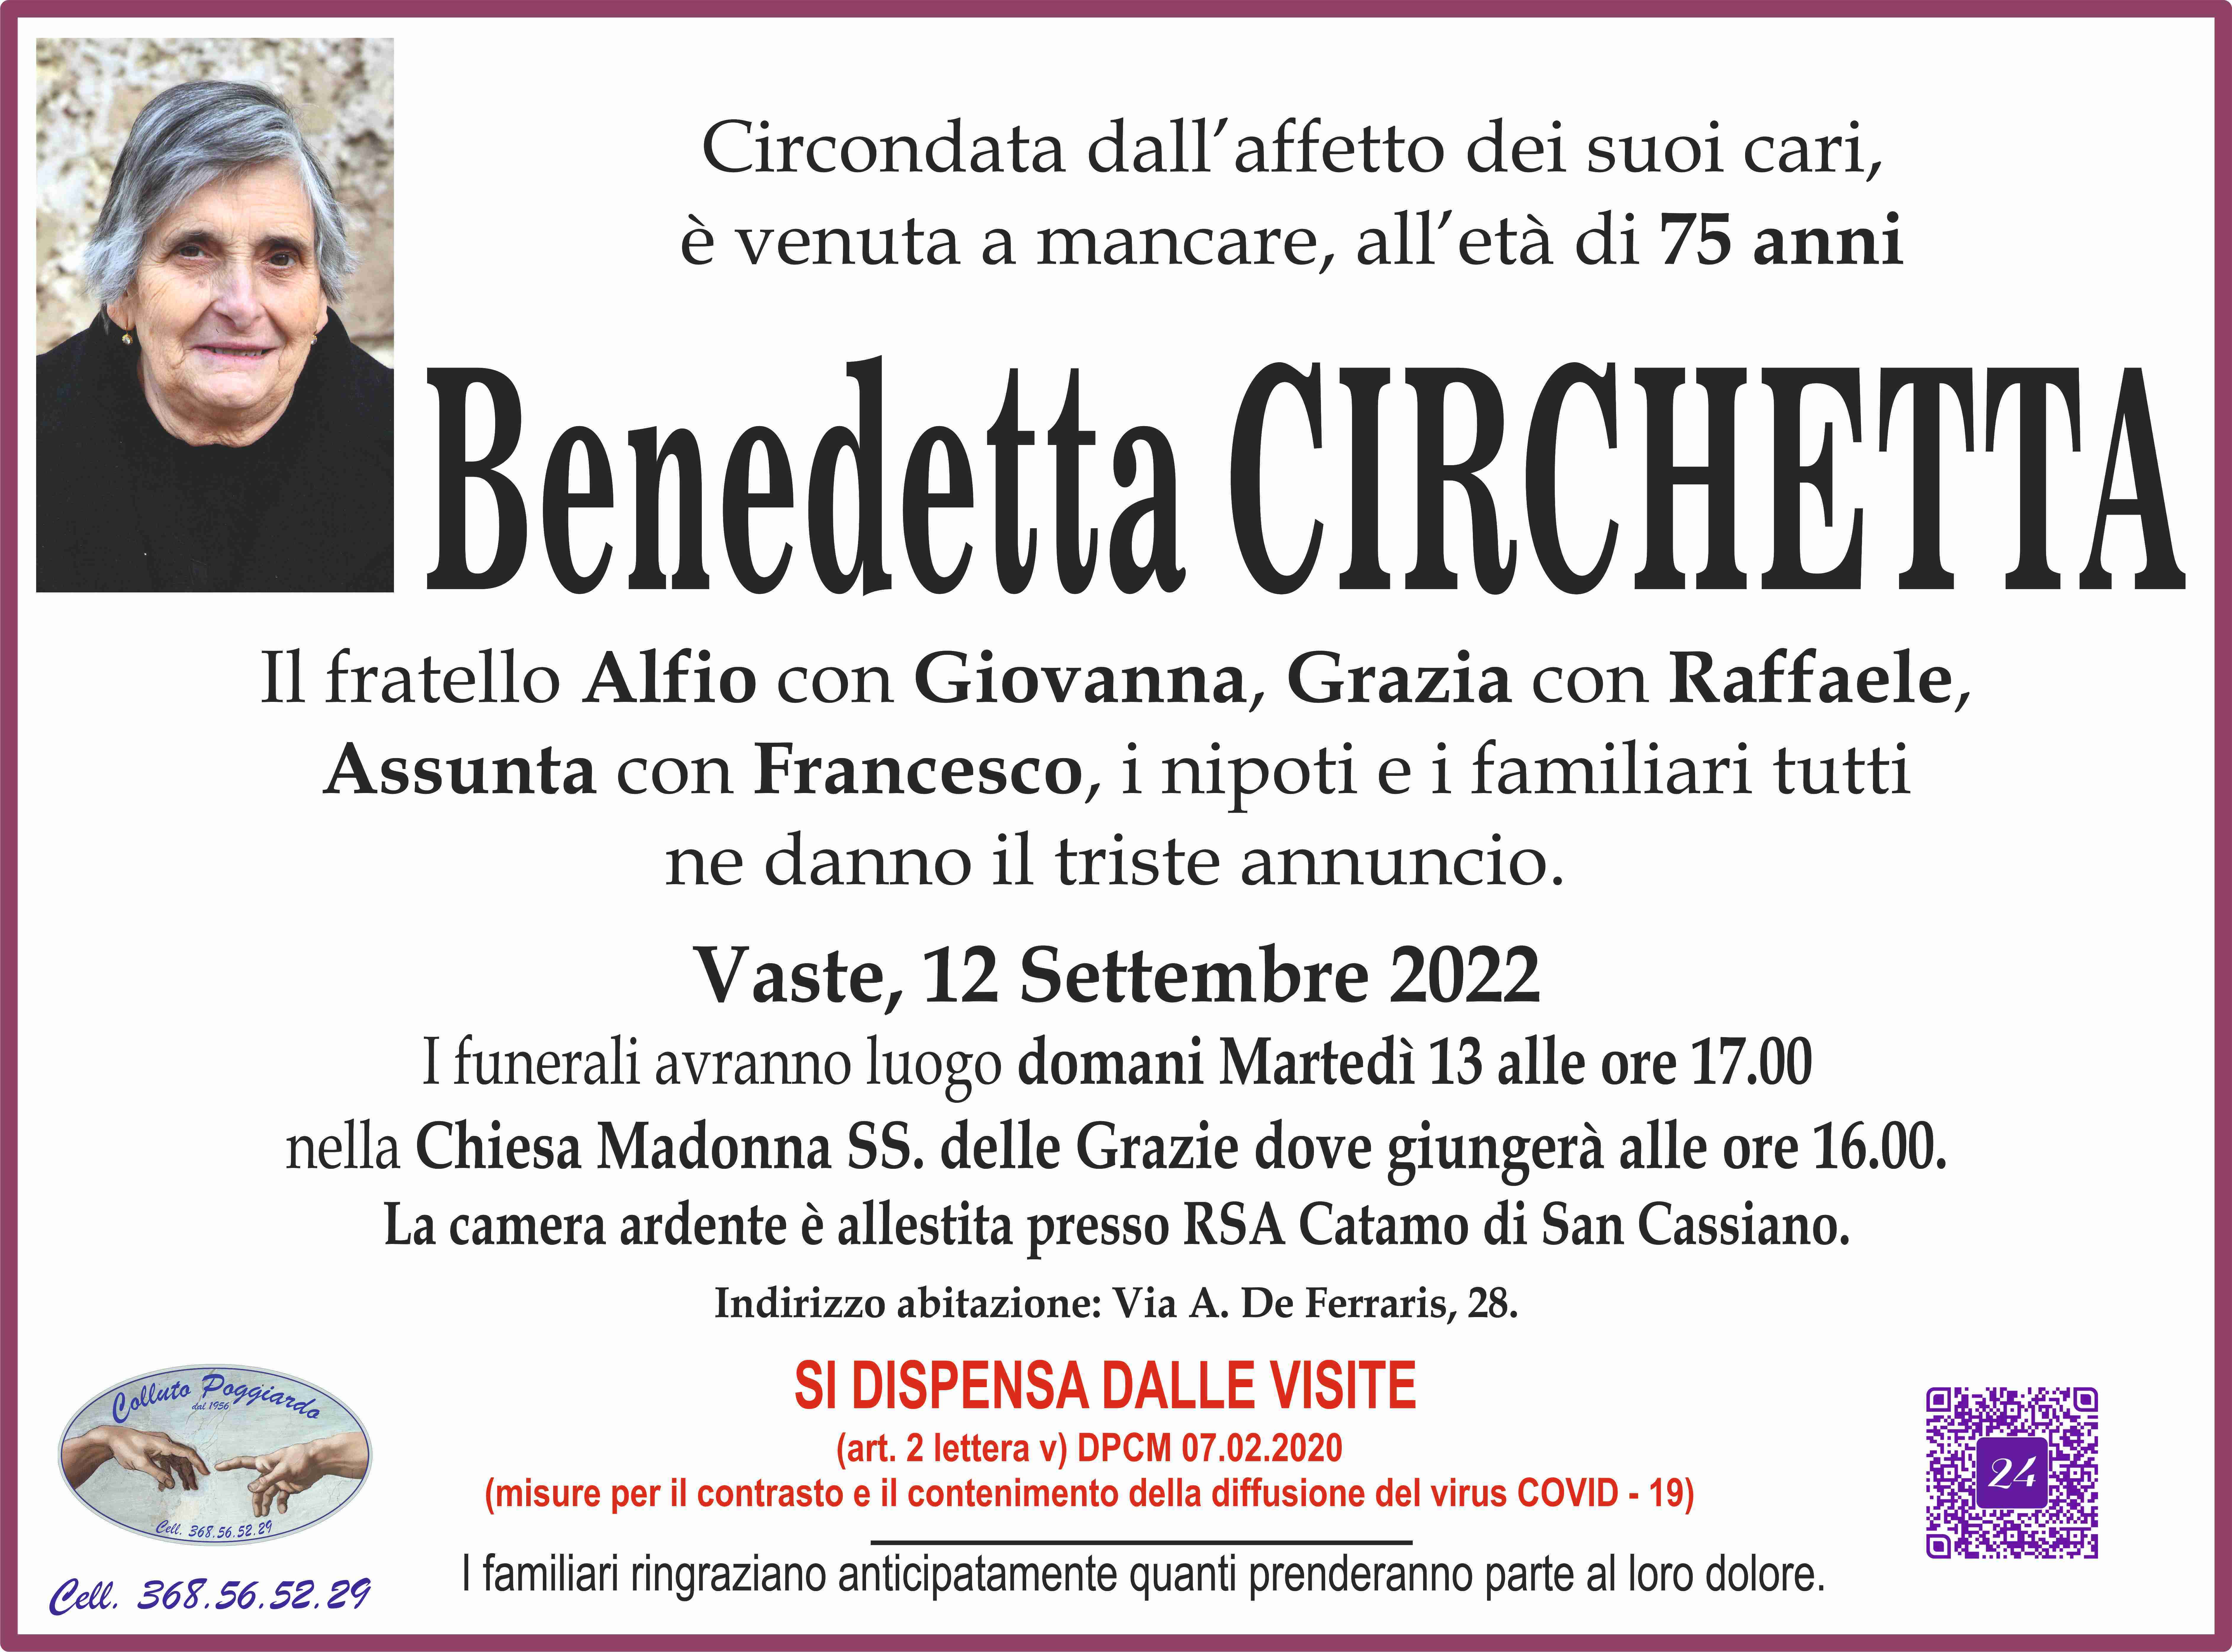 Benedetta Circhetta